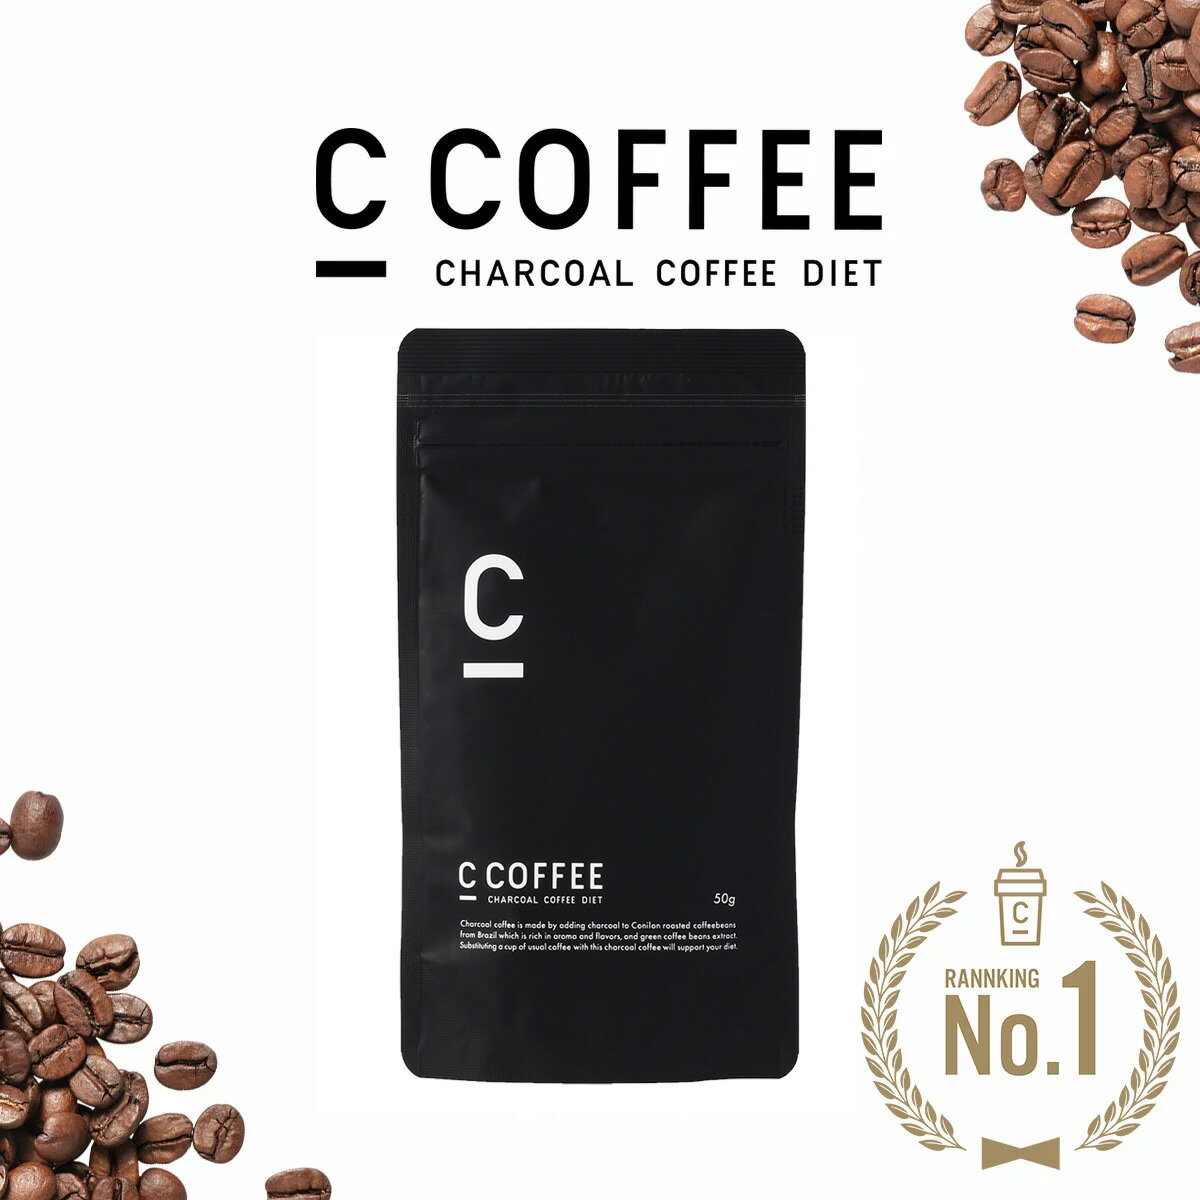 【公式】C COFFEE ( シーコーヒー ) ハーフサイズ 50g ダイエットコーヒー チャコールクレンズ MCTオイル ダイエット コーヒー チャコールコーヒー 人気 ccoffee ダイエット飲料 炭コーヒー プレゼント 1